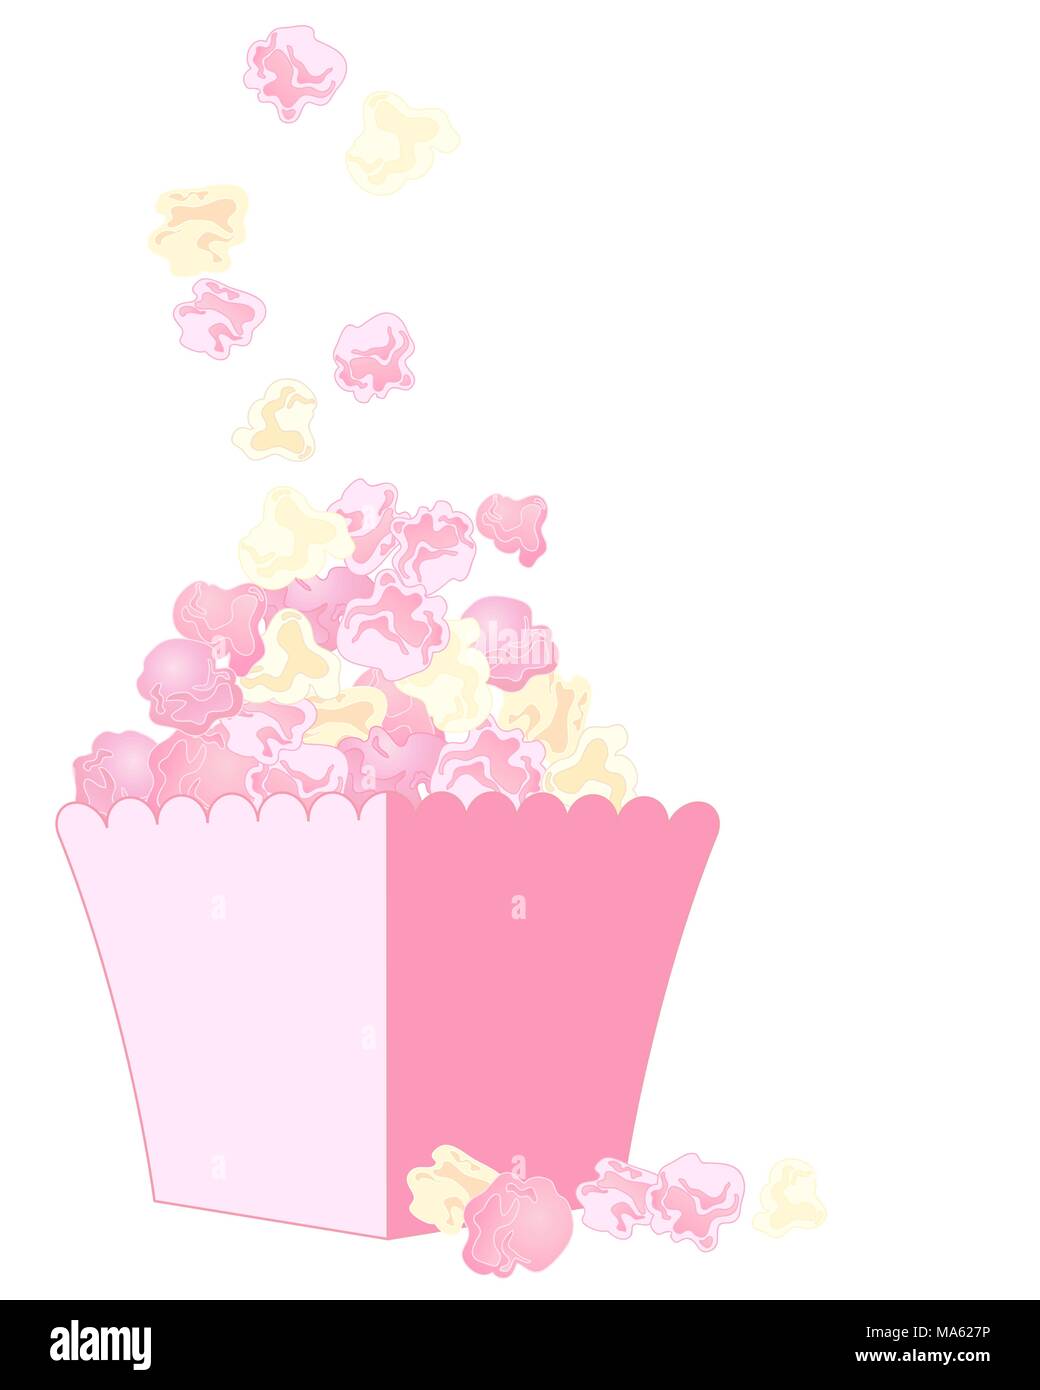 Un vecteur illustration en format eps 10 de delicious fresh corn rose et blanc dans un carton isolé sur fond blanc Illustration de Vecteur